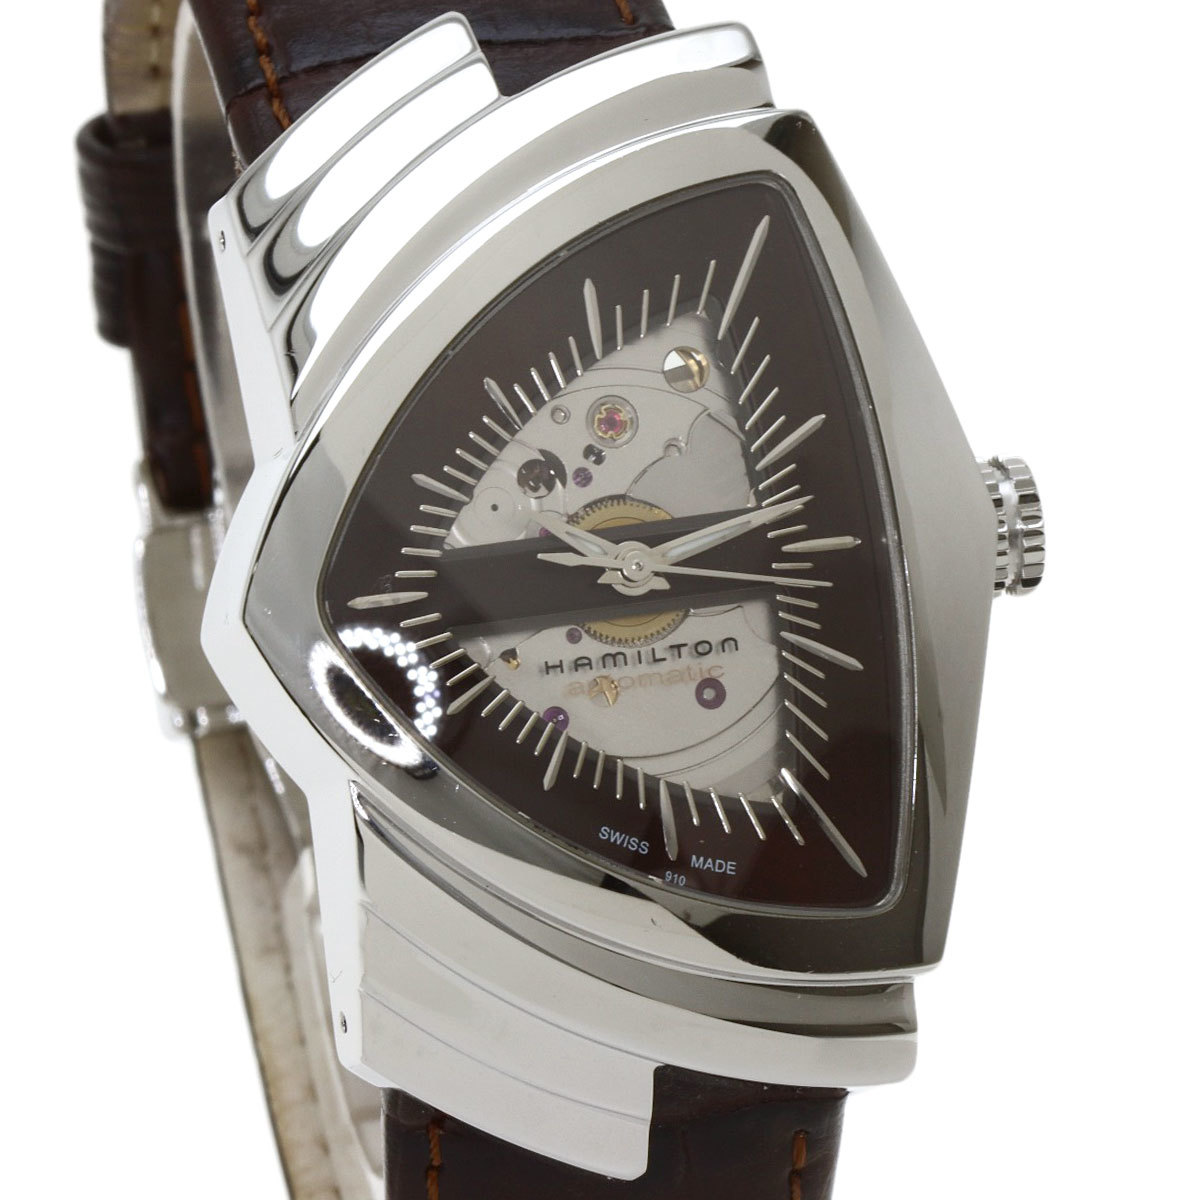 HAMILTON ハミルトン H245150 ベンチュラ 腕時計 ステンレススチール 革 メンズ